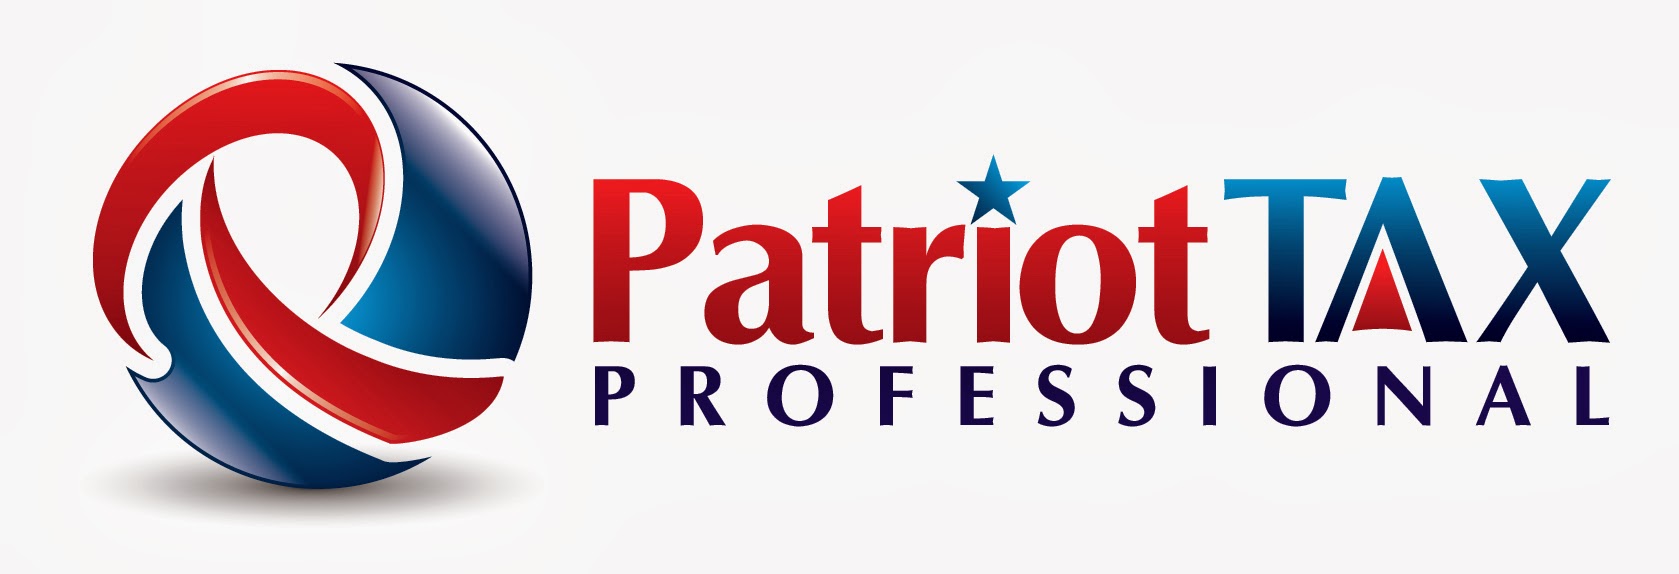 Patriot Tax Professional